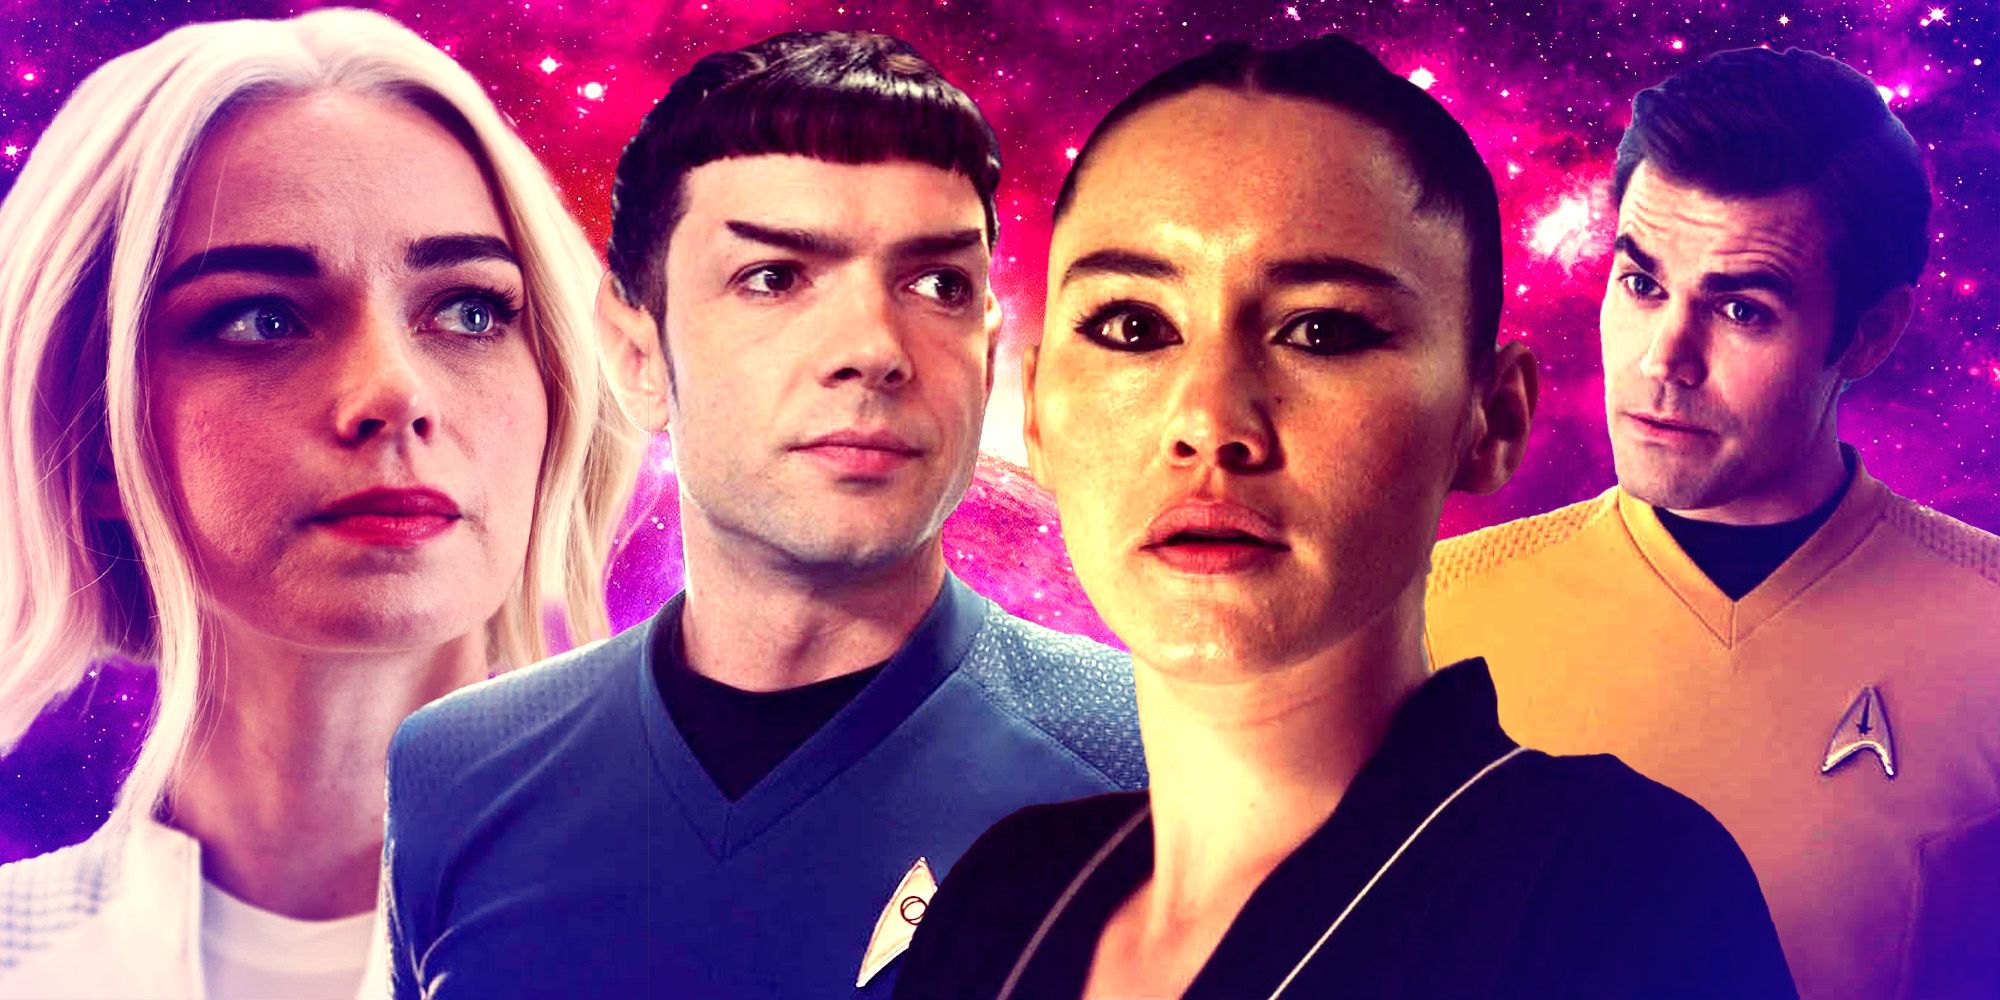 “Historias de relaciones en el espacio”: el showrunner de Strange New Worlds revela el secreto del éxito del programa de Star Trek